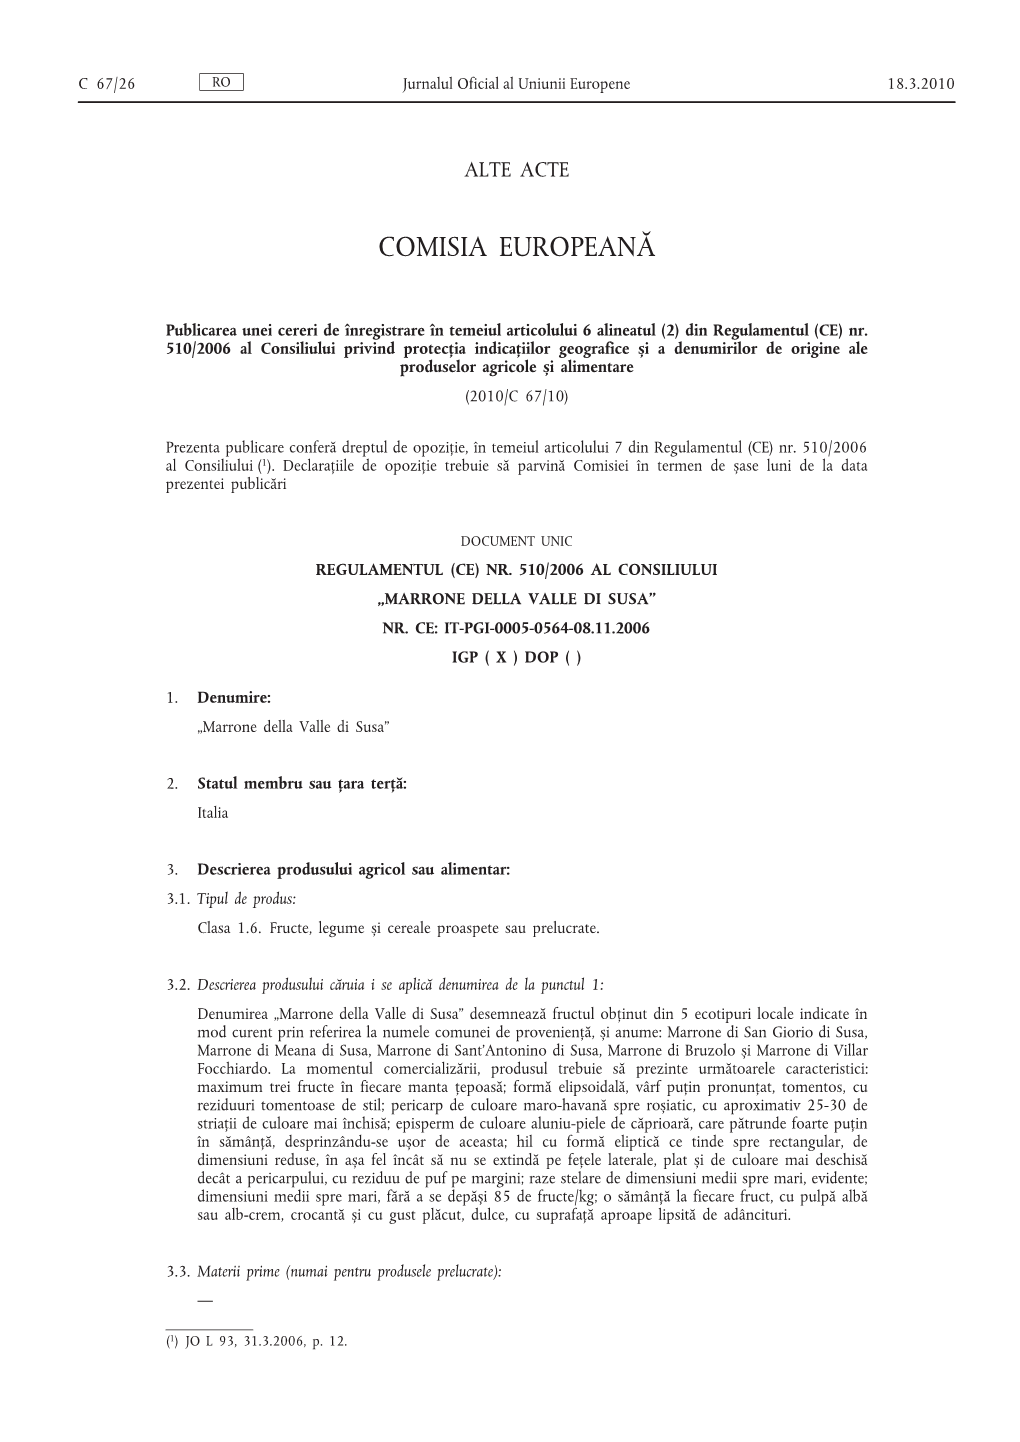 CE) Nr. 510/2006 Al Consiliului Privind Protecția Indicațiilor Geografice Și a Denumirilor De Origine Ale Produselor Agricole Și Alimentare (2010/C 67/10